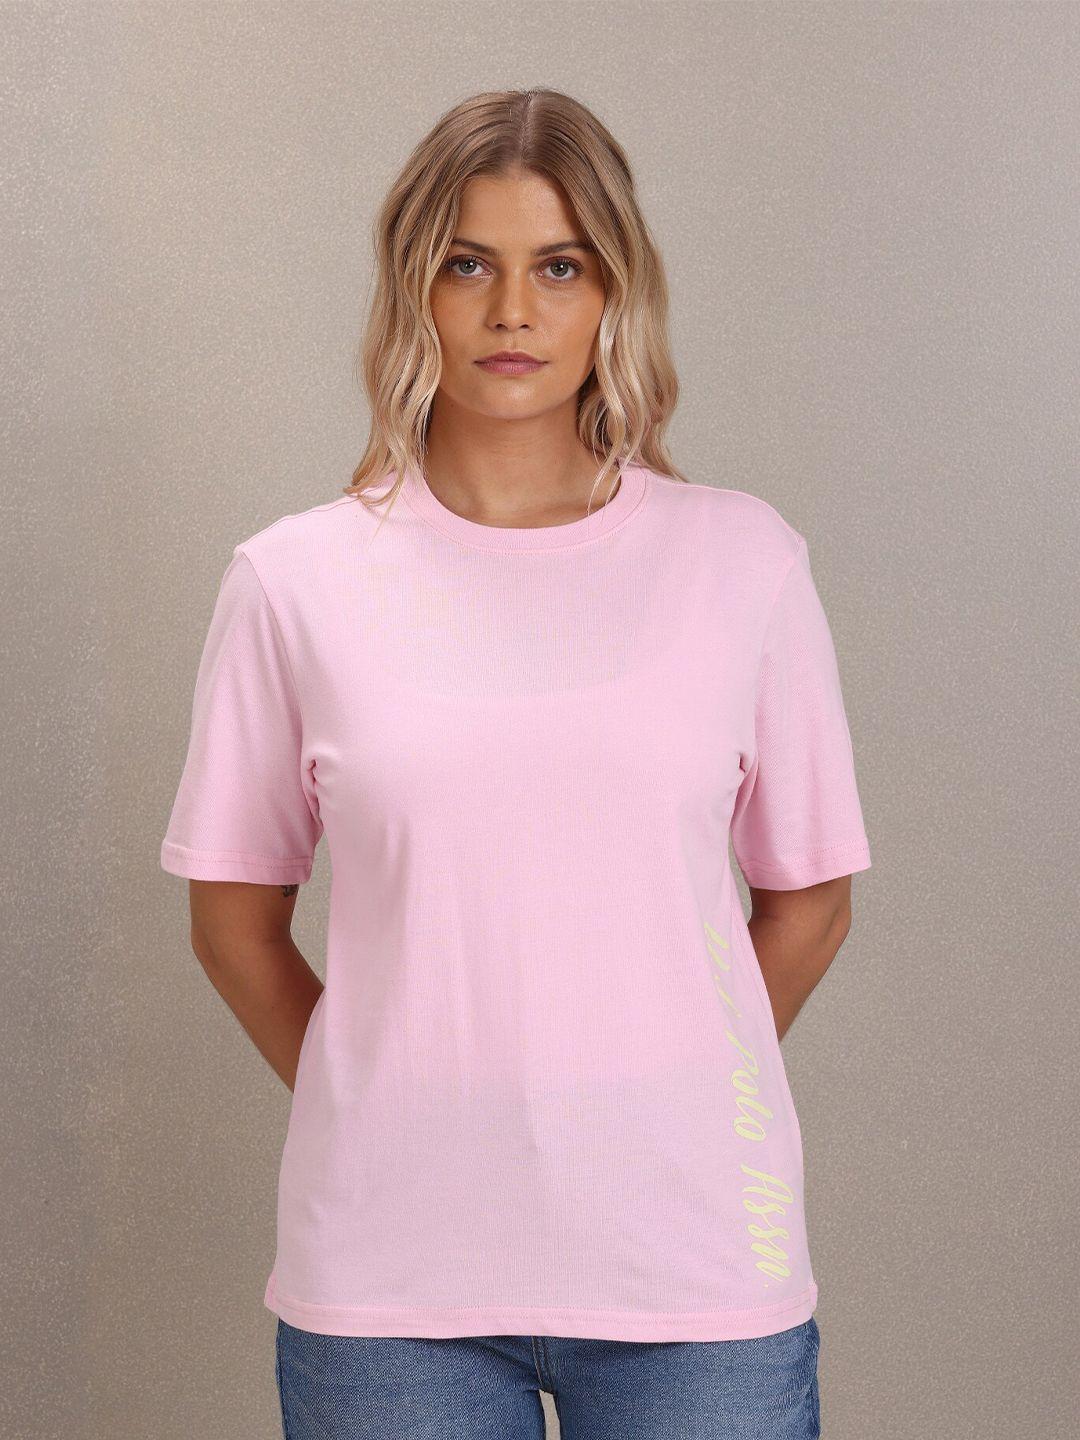 u s polo assn women pink t-shirt